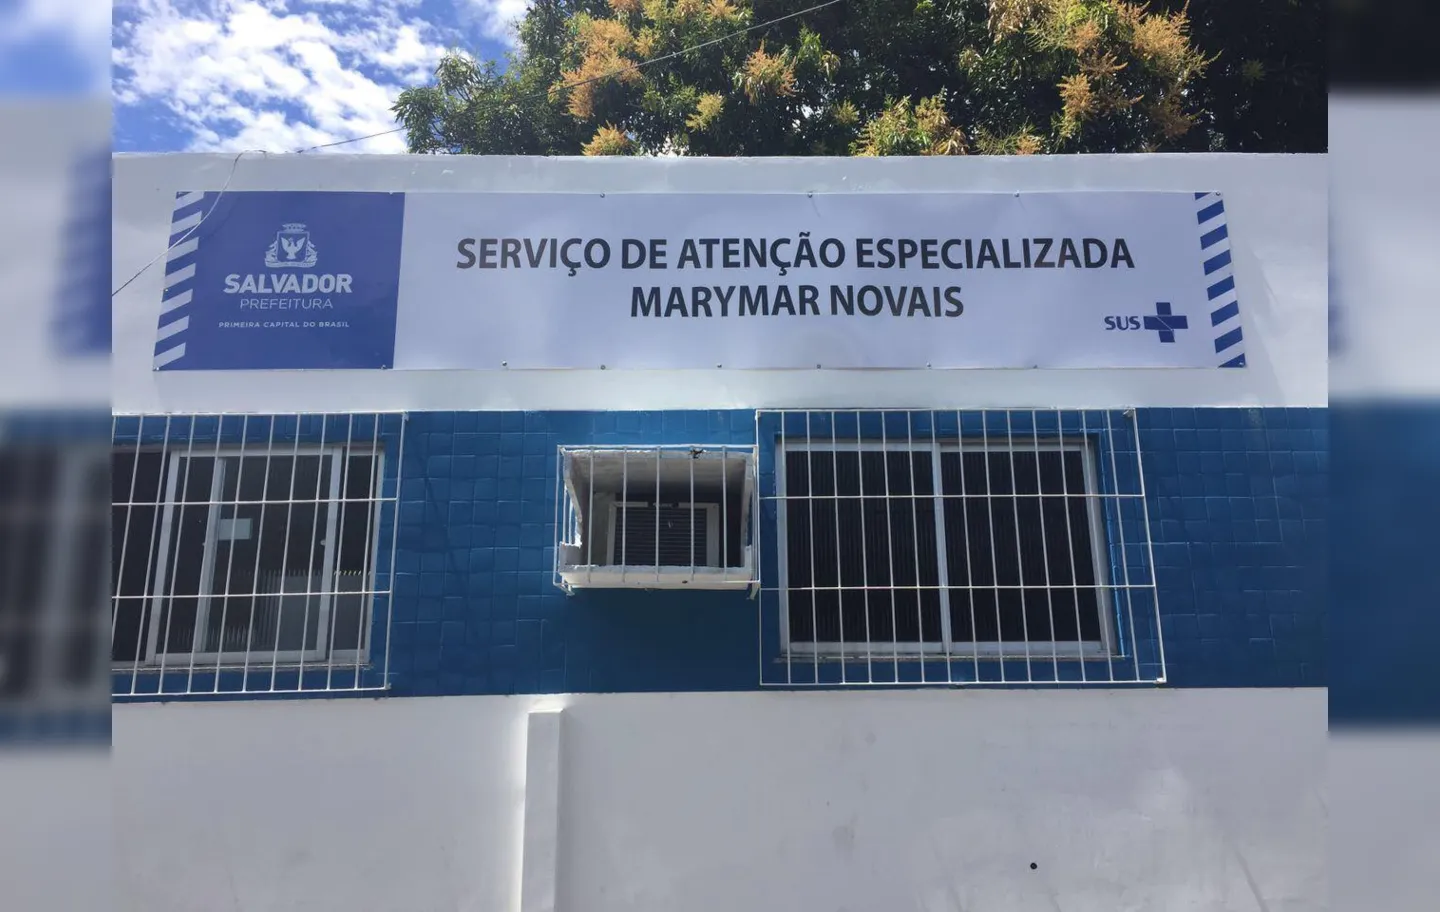 O SAE Marymar Novais fica localizado no bairro Dendezeiros e é referência para tratamento de HTLV e HIV/AIDS. Esta é uma das três unidades em Salvador com defasagem de infectologistas |Foto: SAE Marymar Novais